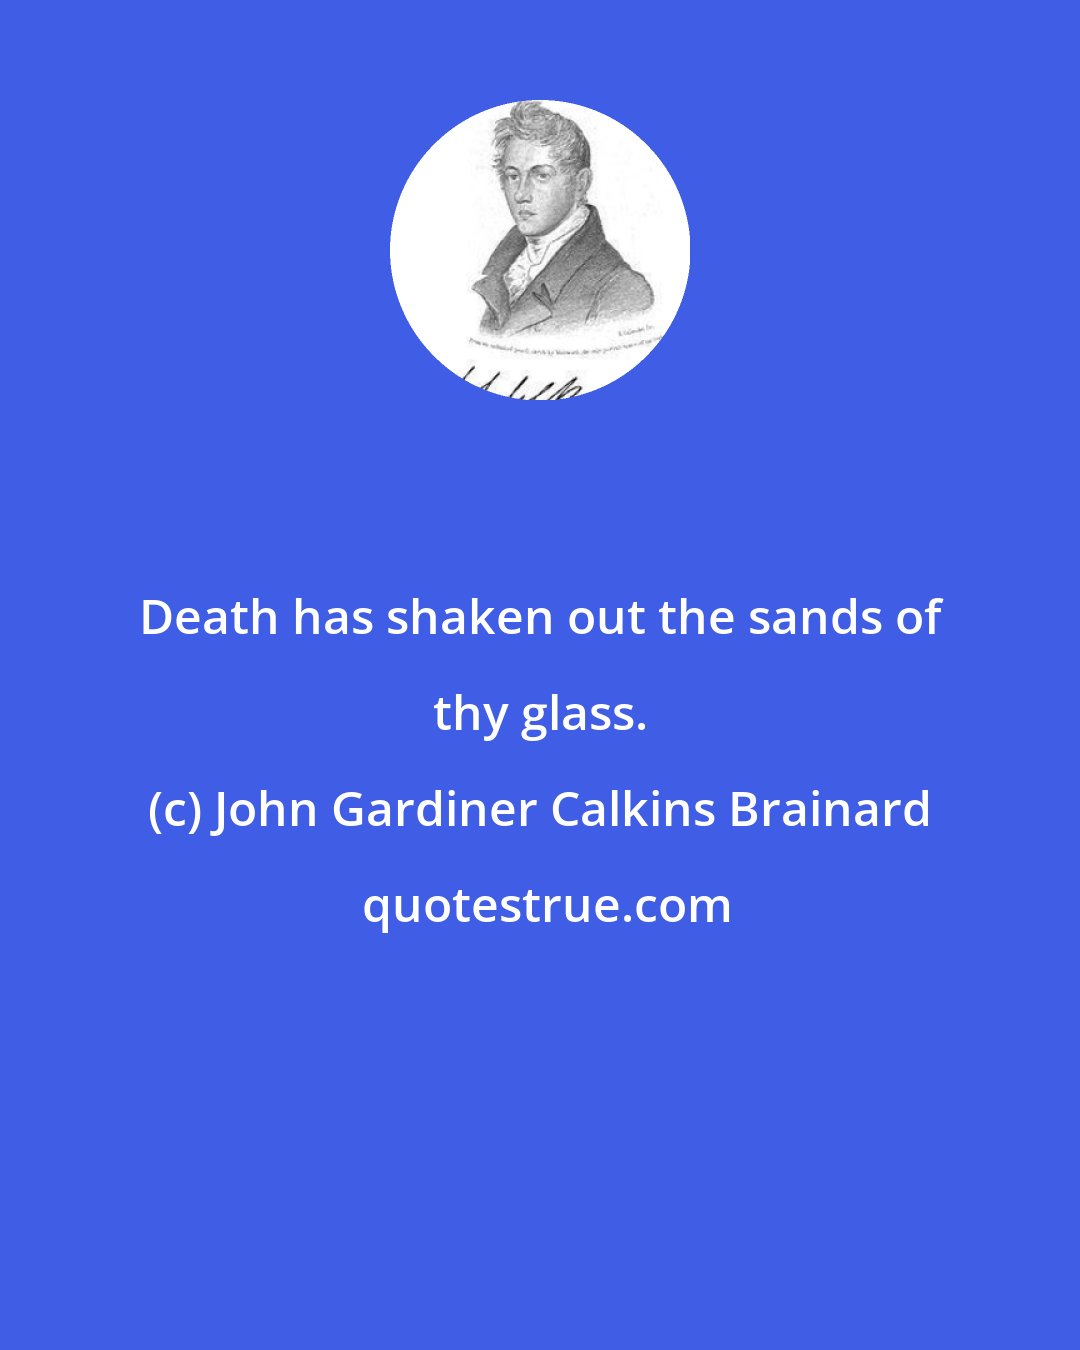 John Gardiner Calkins Brainard: Death has shaken out the sands of thy glass.